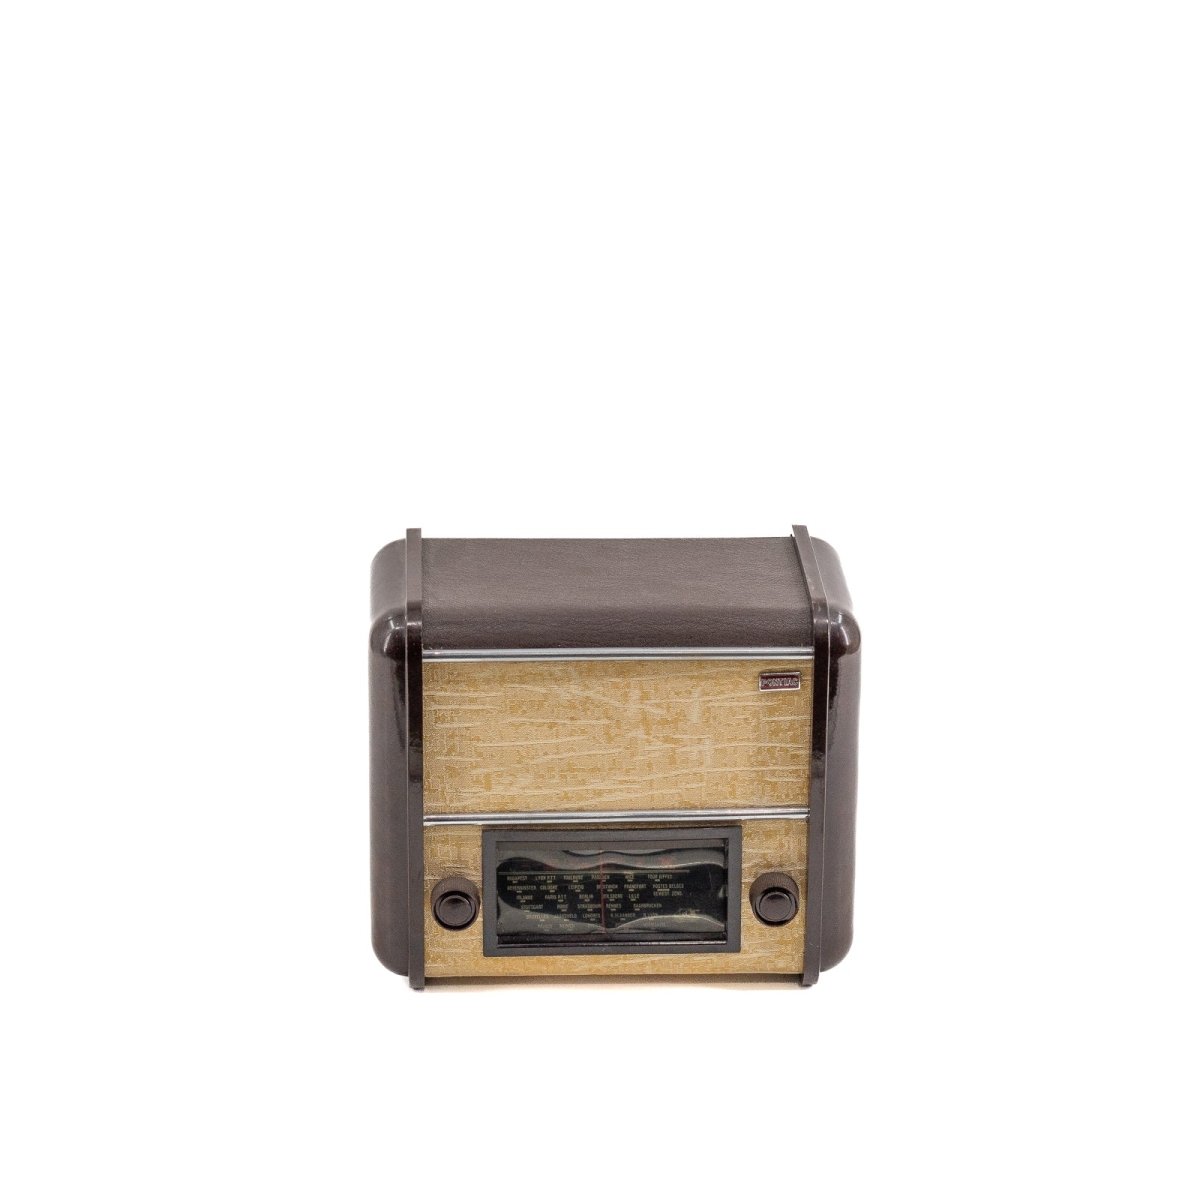 Radio Bluetooth Pontiac Vintage 50’S enceinte connectée française haut de gamme absolument prodige radio vintage